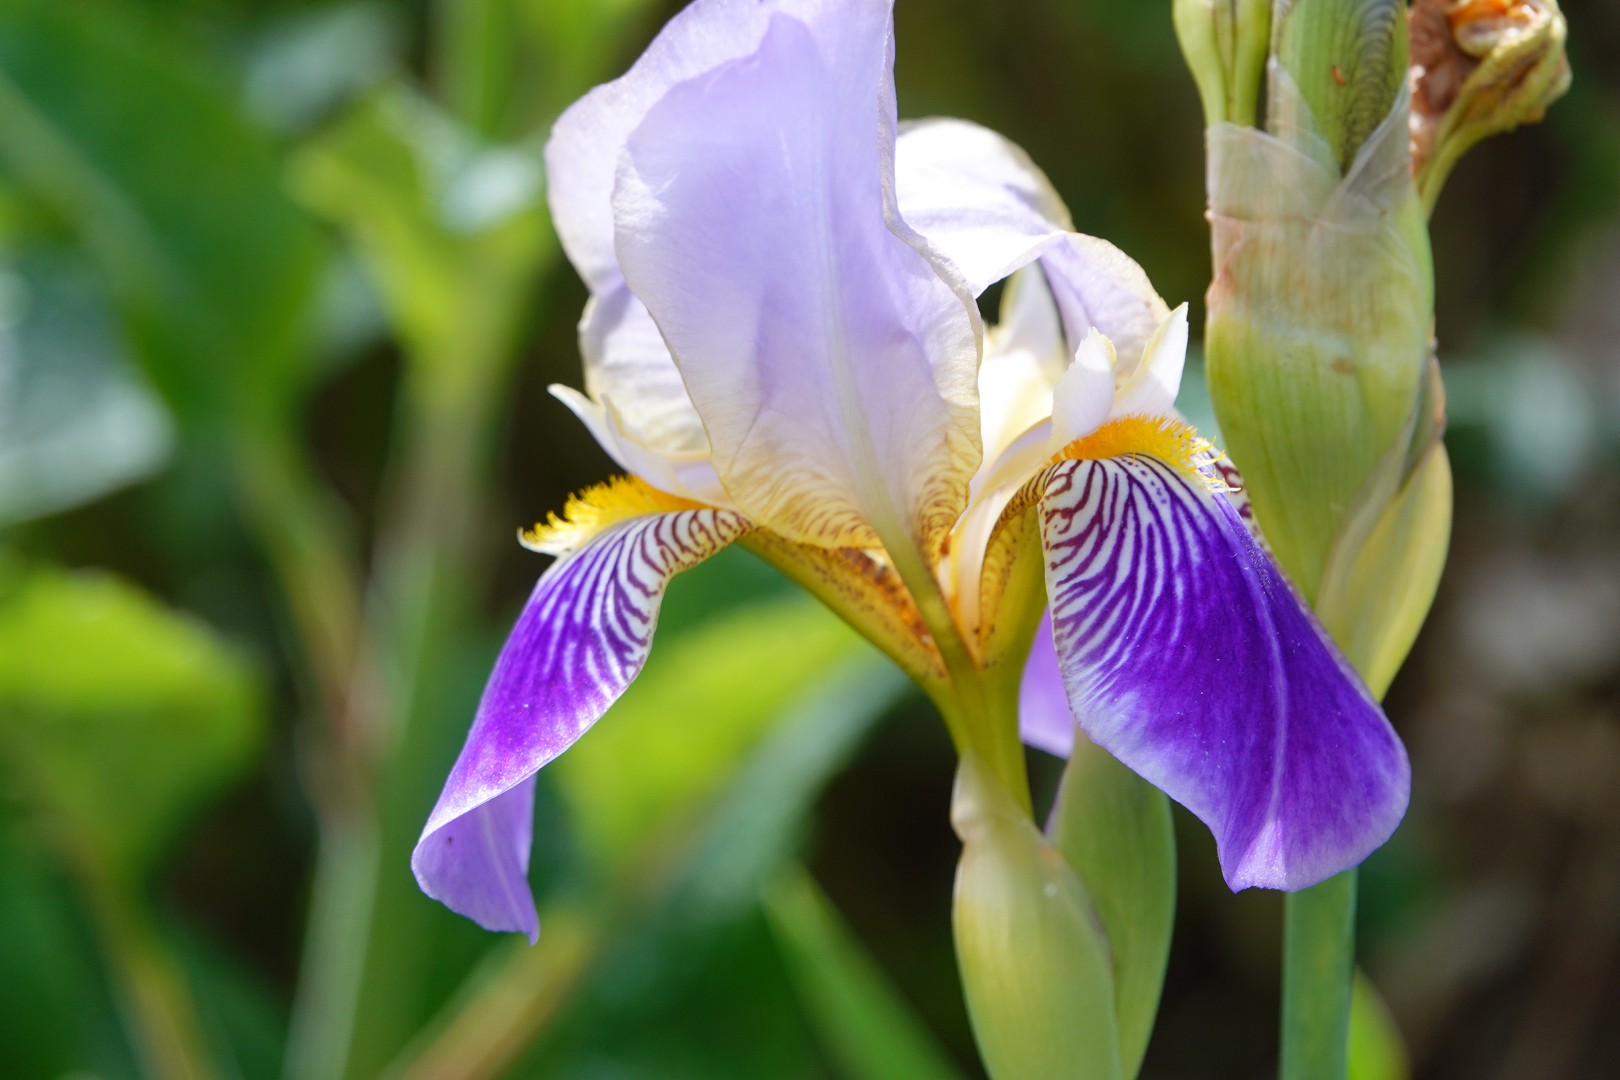 Iris in bloei